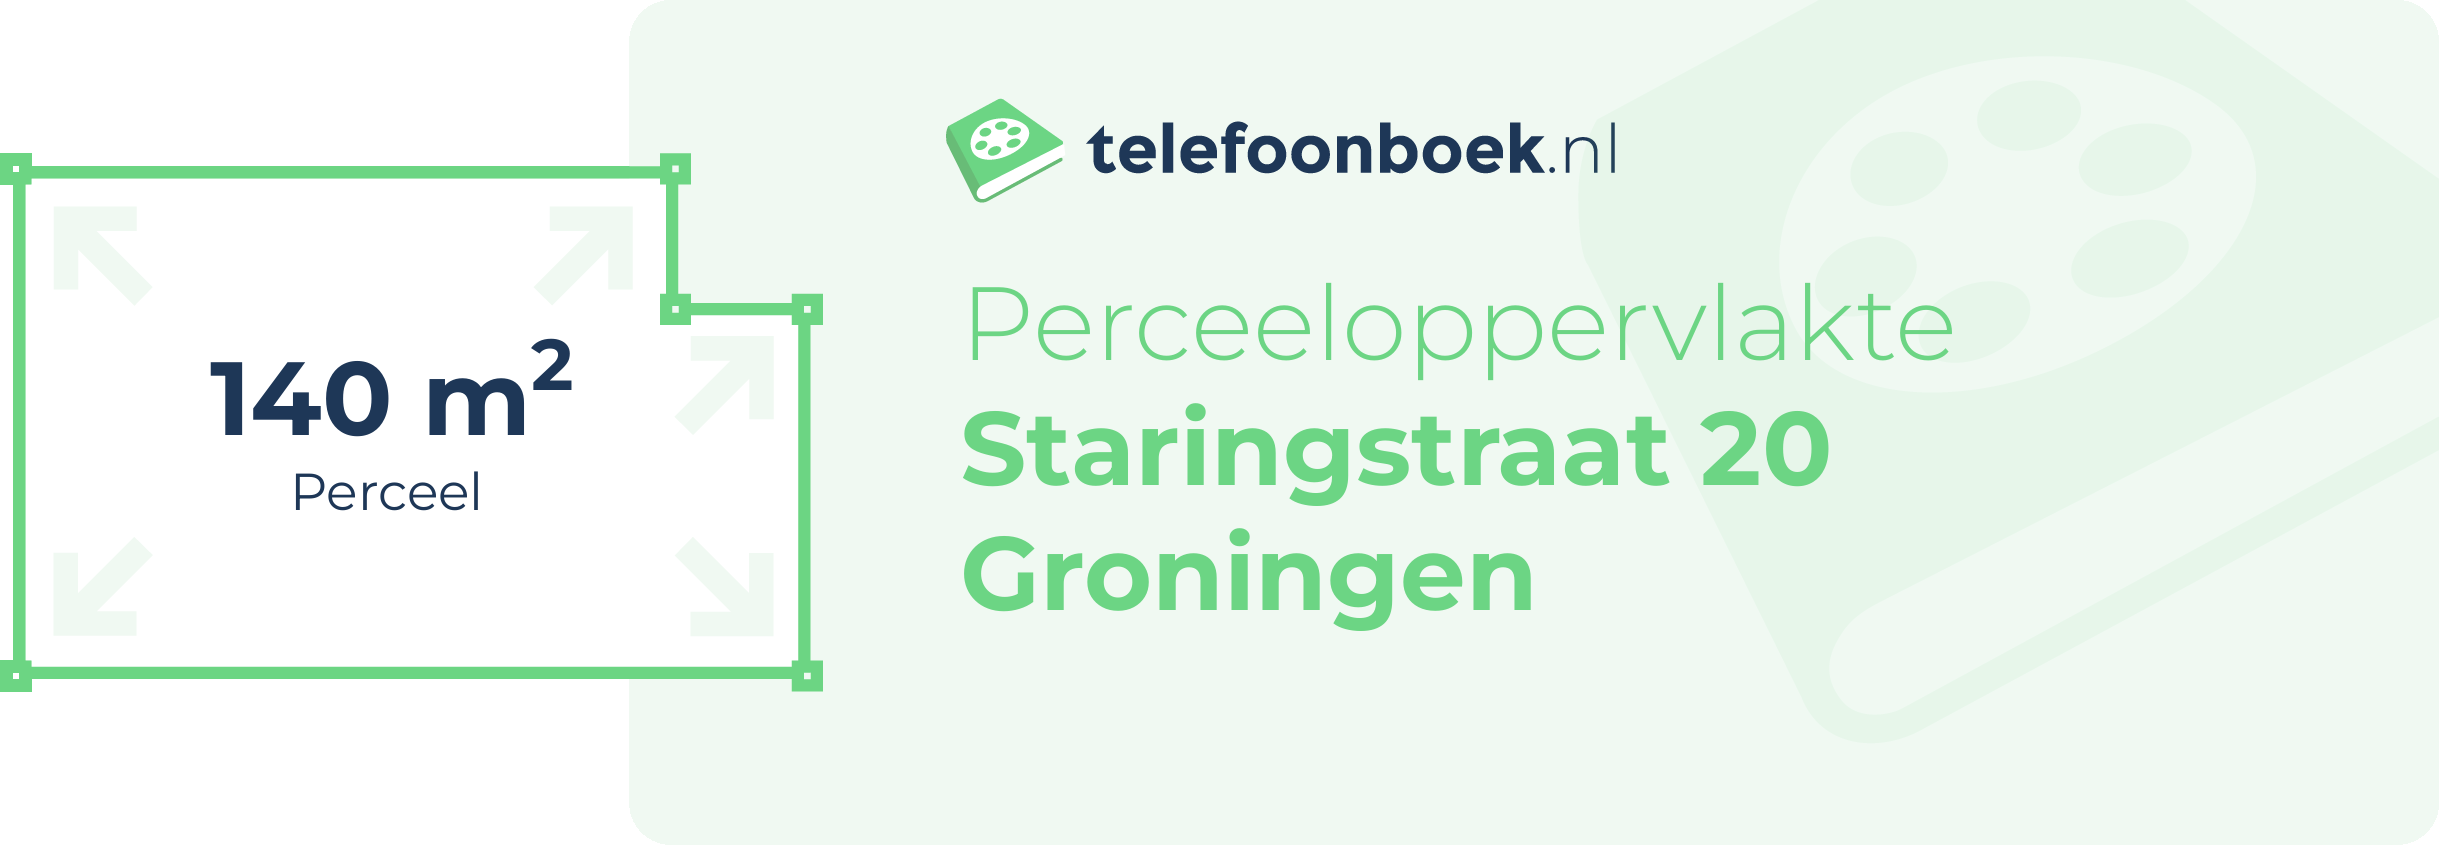 Perceeloppervlakte Staringstraat 20 Groningen